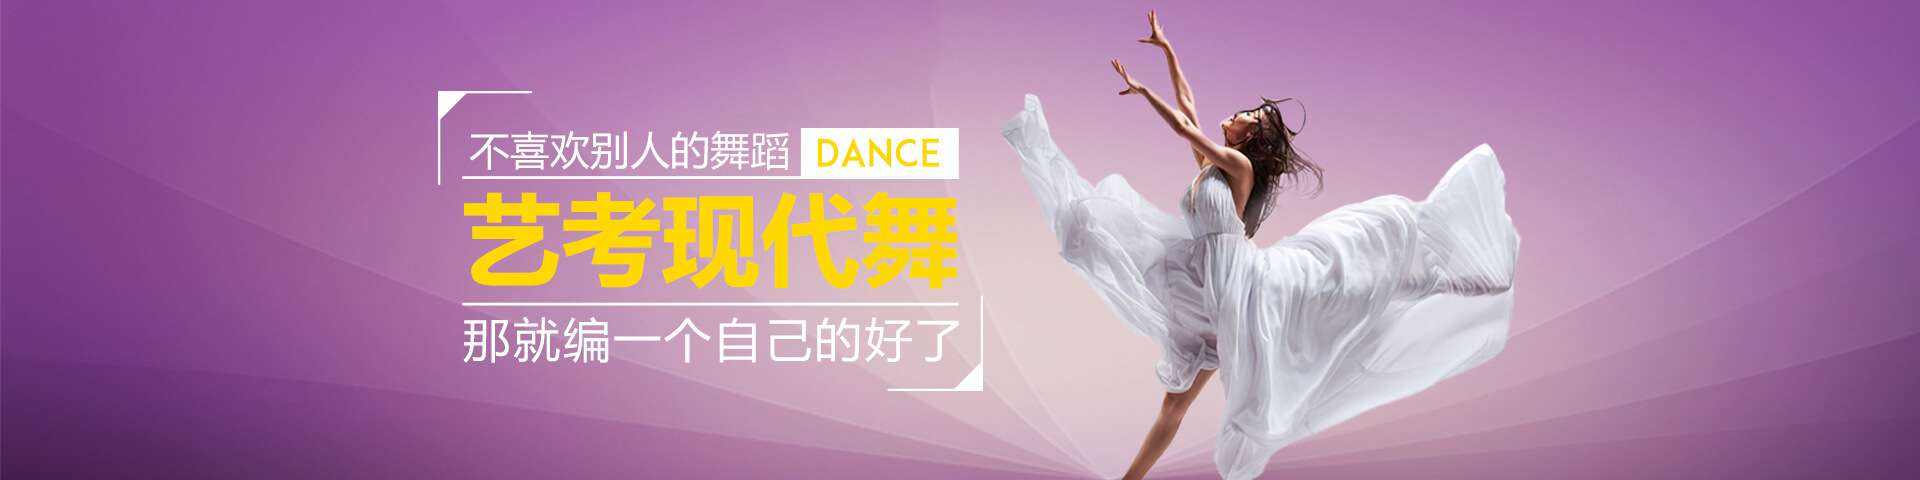 北京钢管舞专业培训班-长期招生